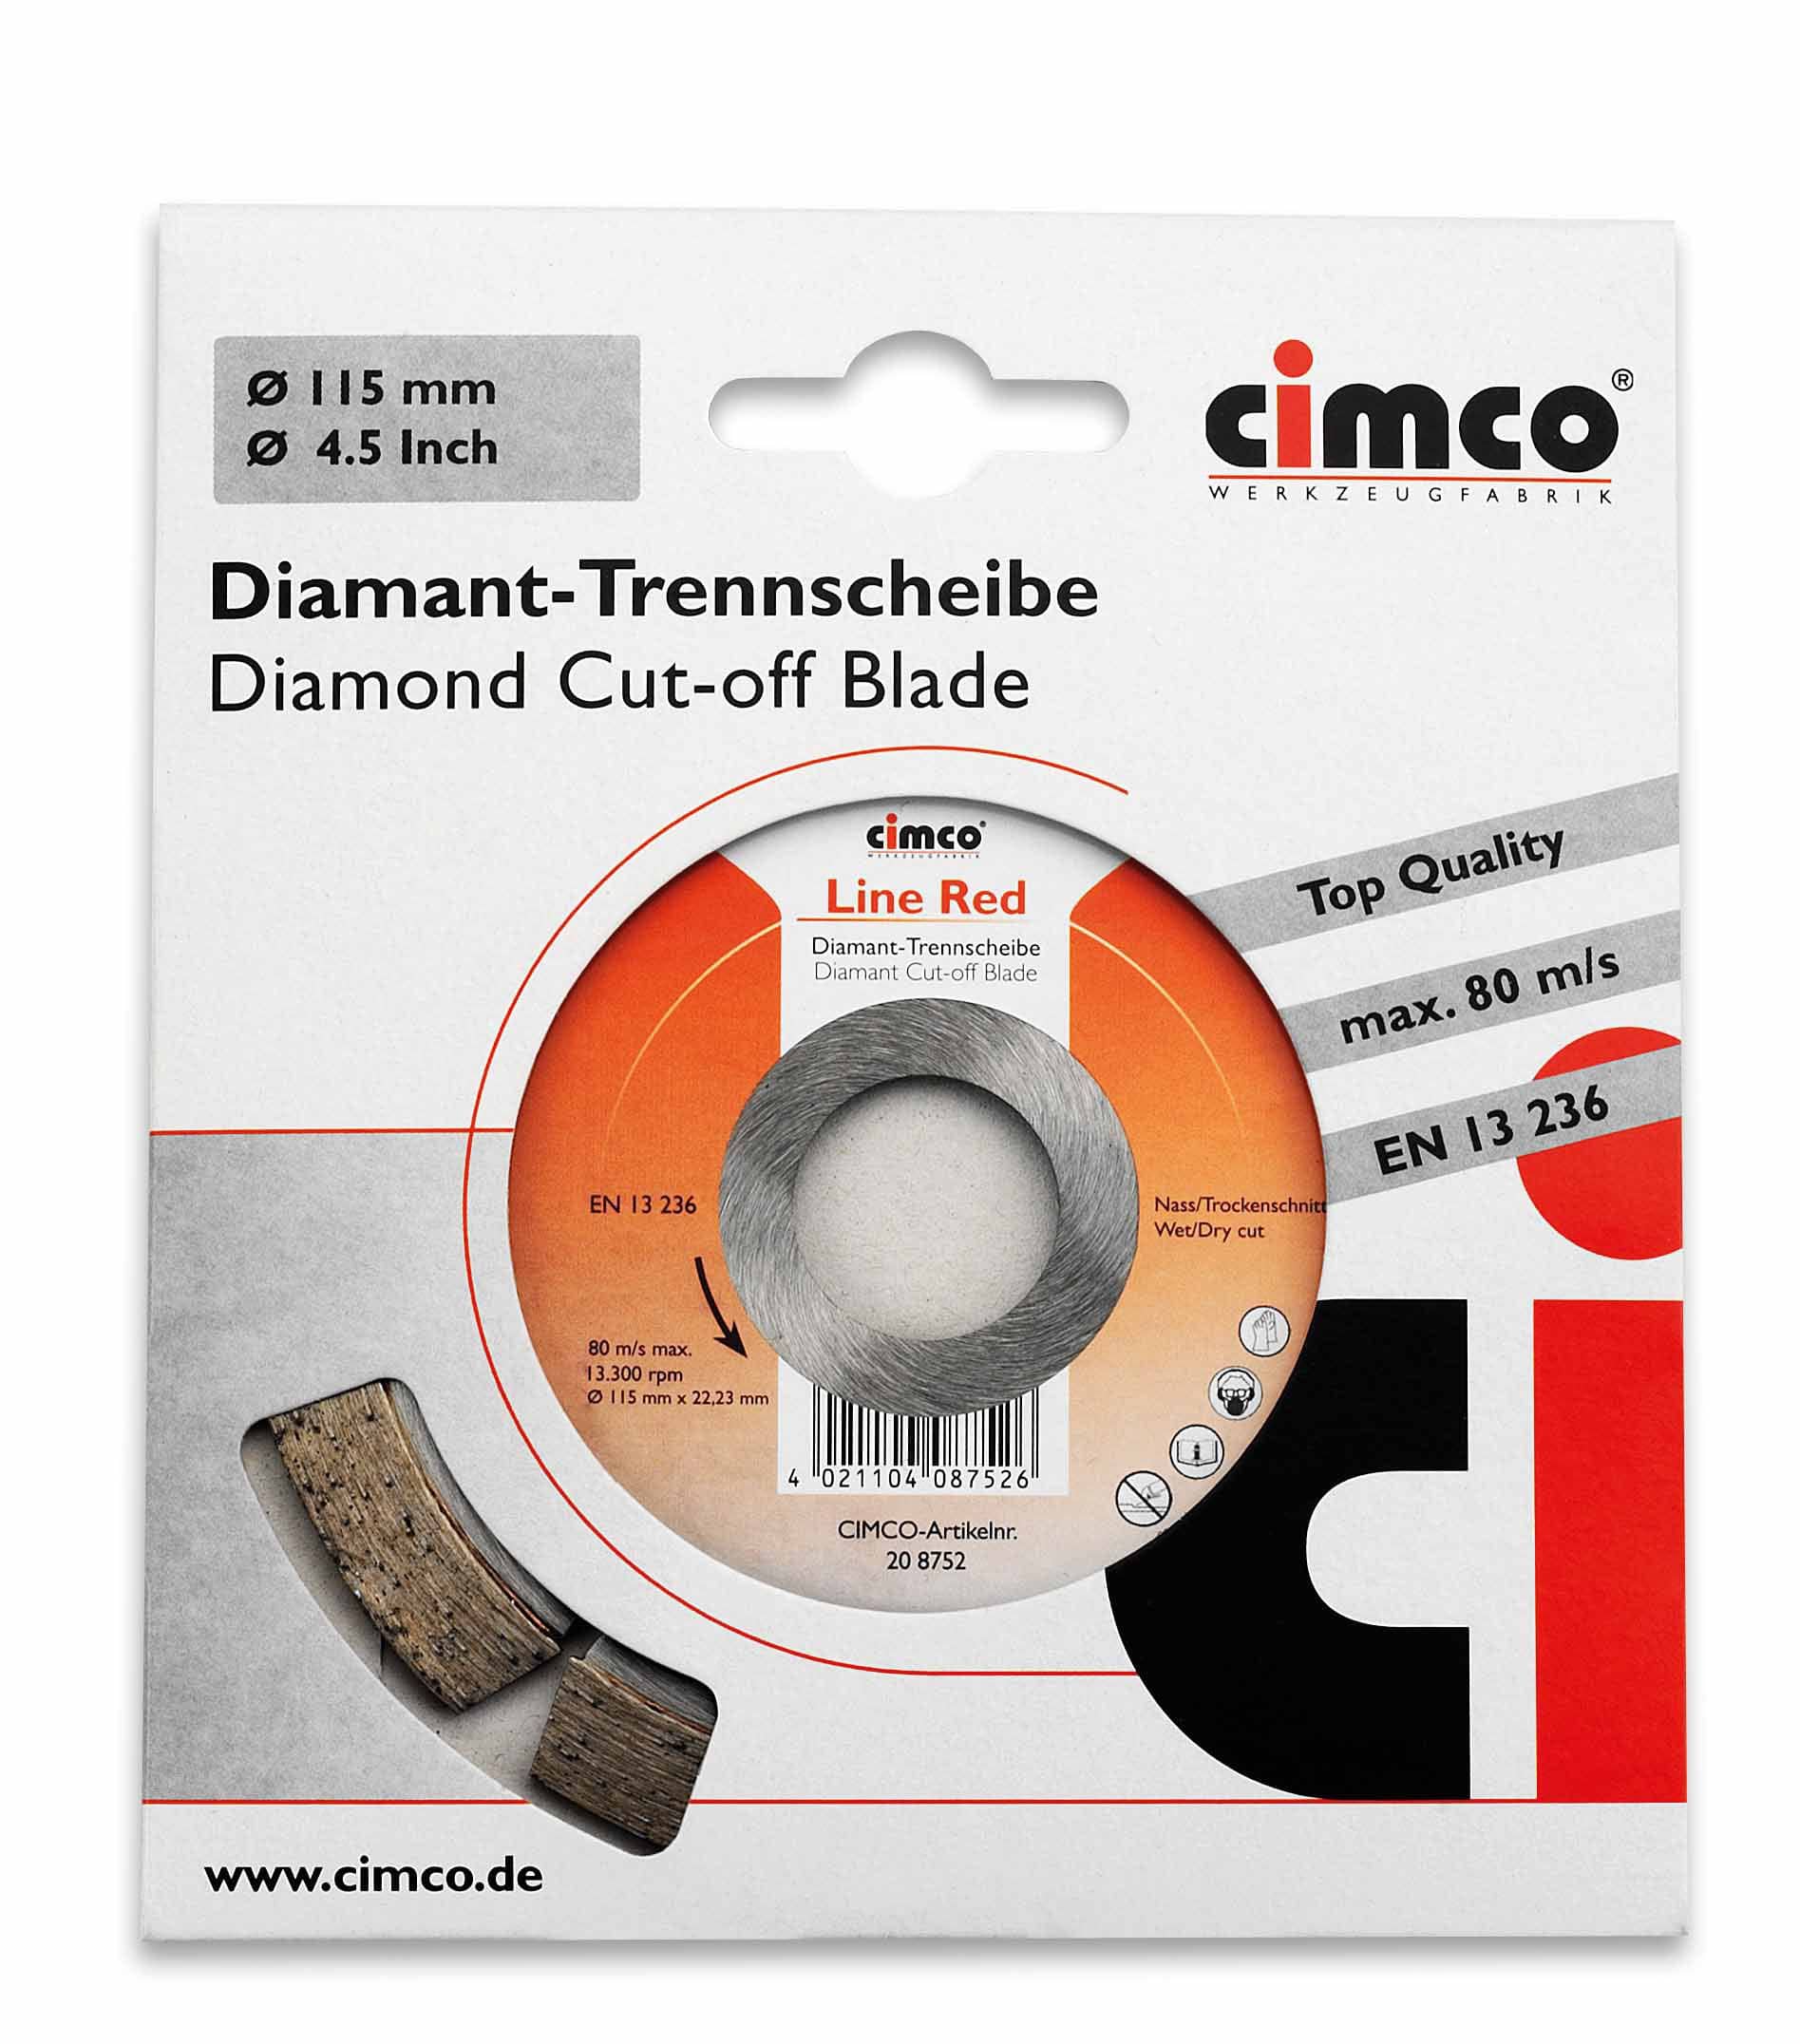 Cimco 20 8752 Diamant-Trennscheibe Line Red, für Kalksandstein, Scheiben-Ø 115 mm